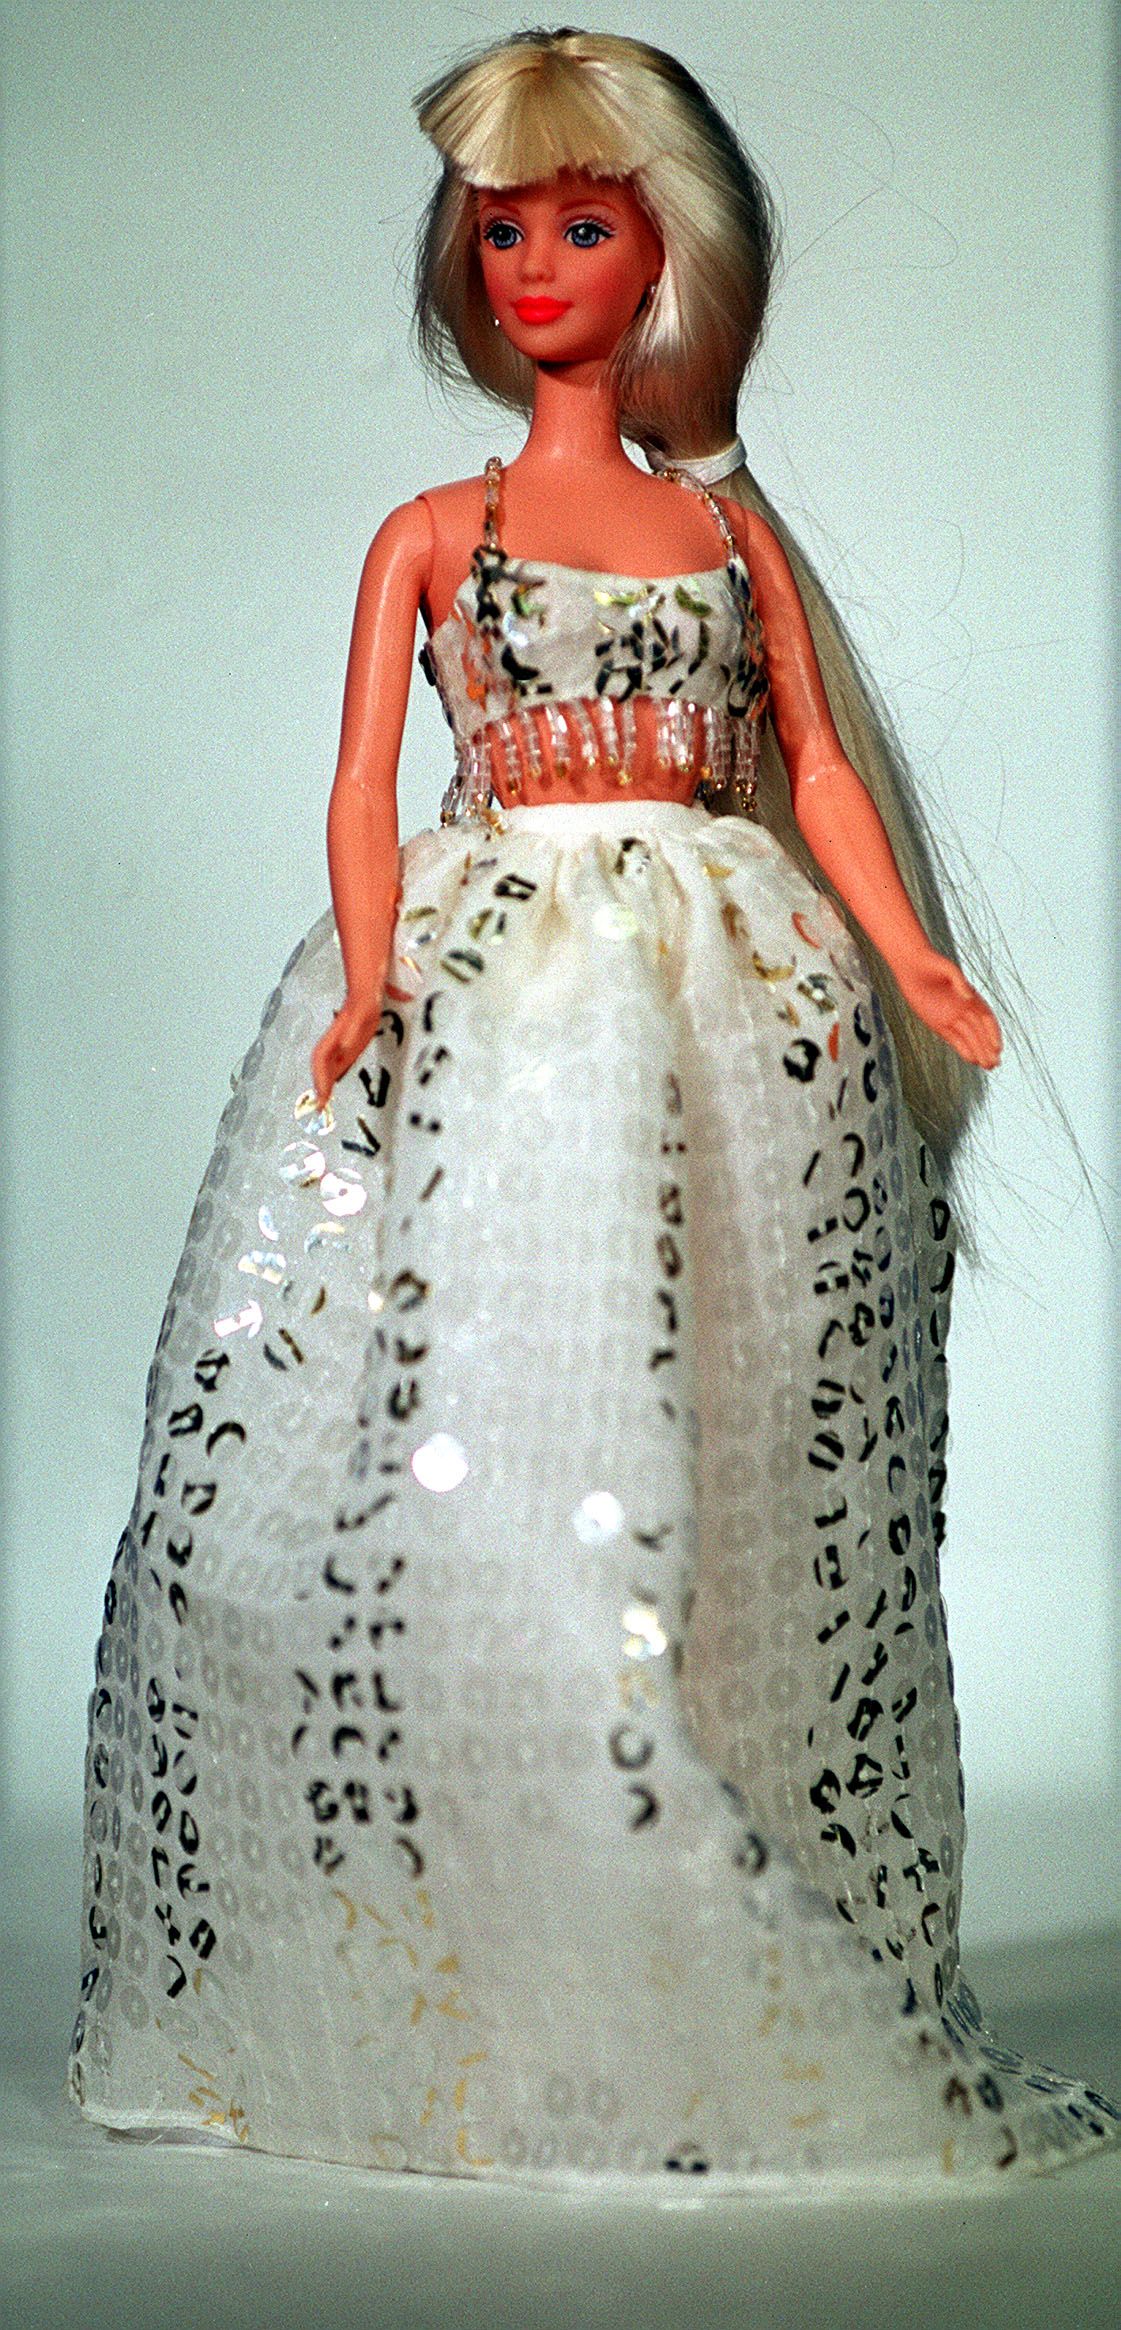 barbie in a dress